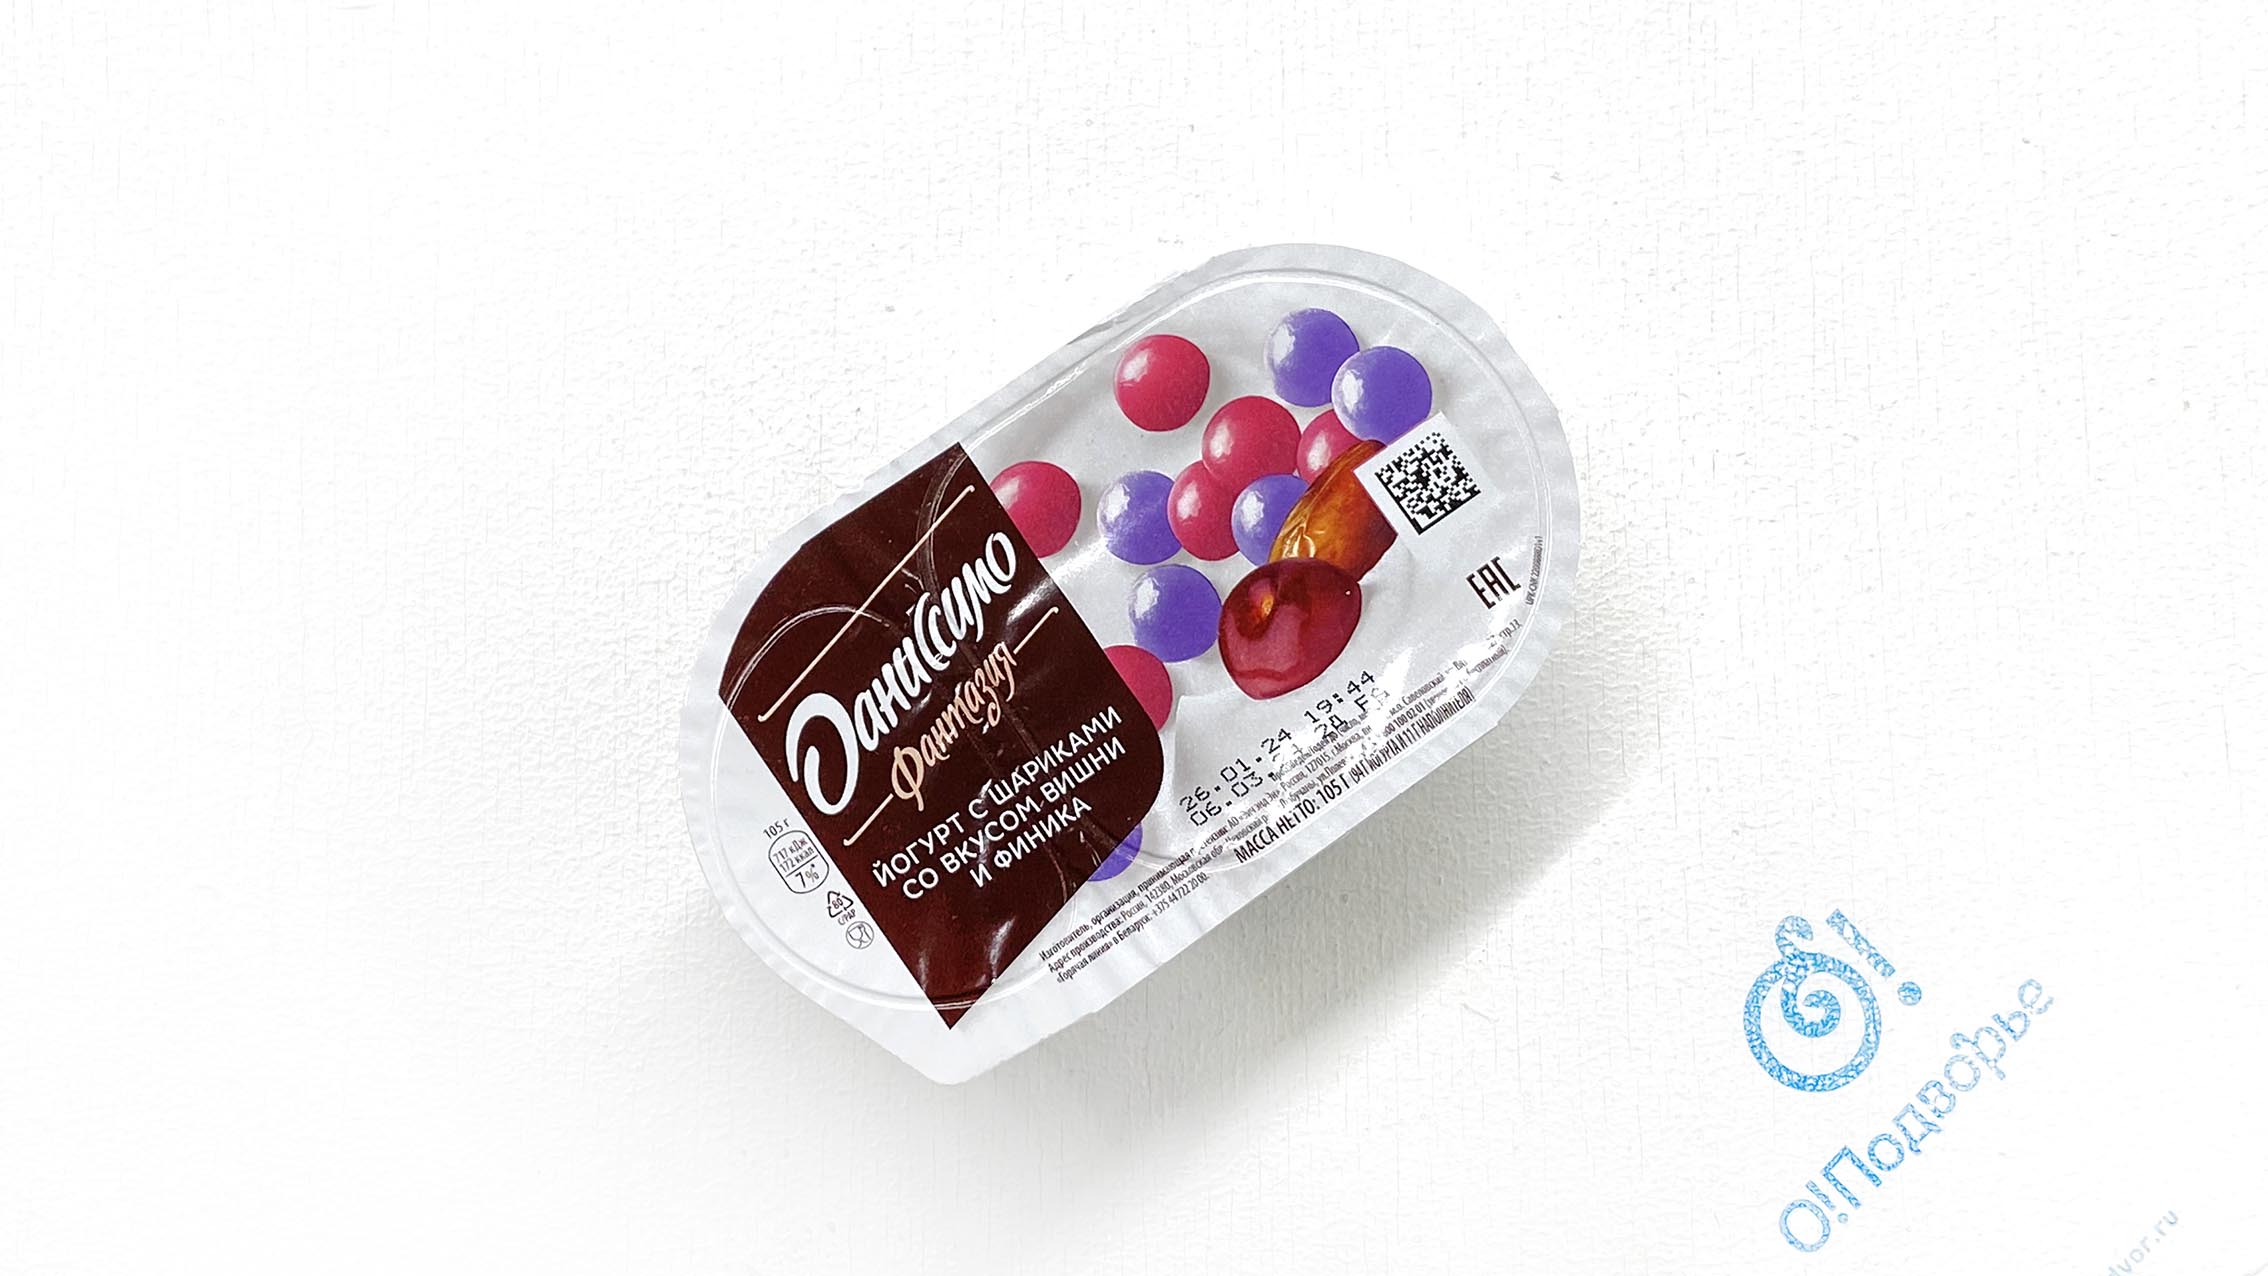 Йогурт с шариками со вкусом вишни и финика "Даниссимо фантазия", АО "Эич энд Эн", 105 грамм, (Зл) 